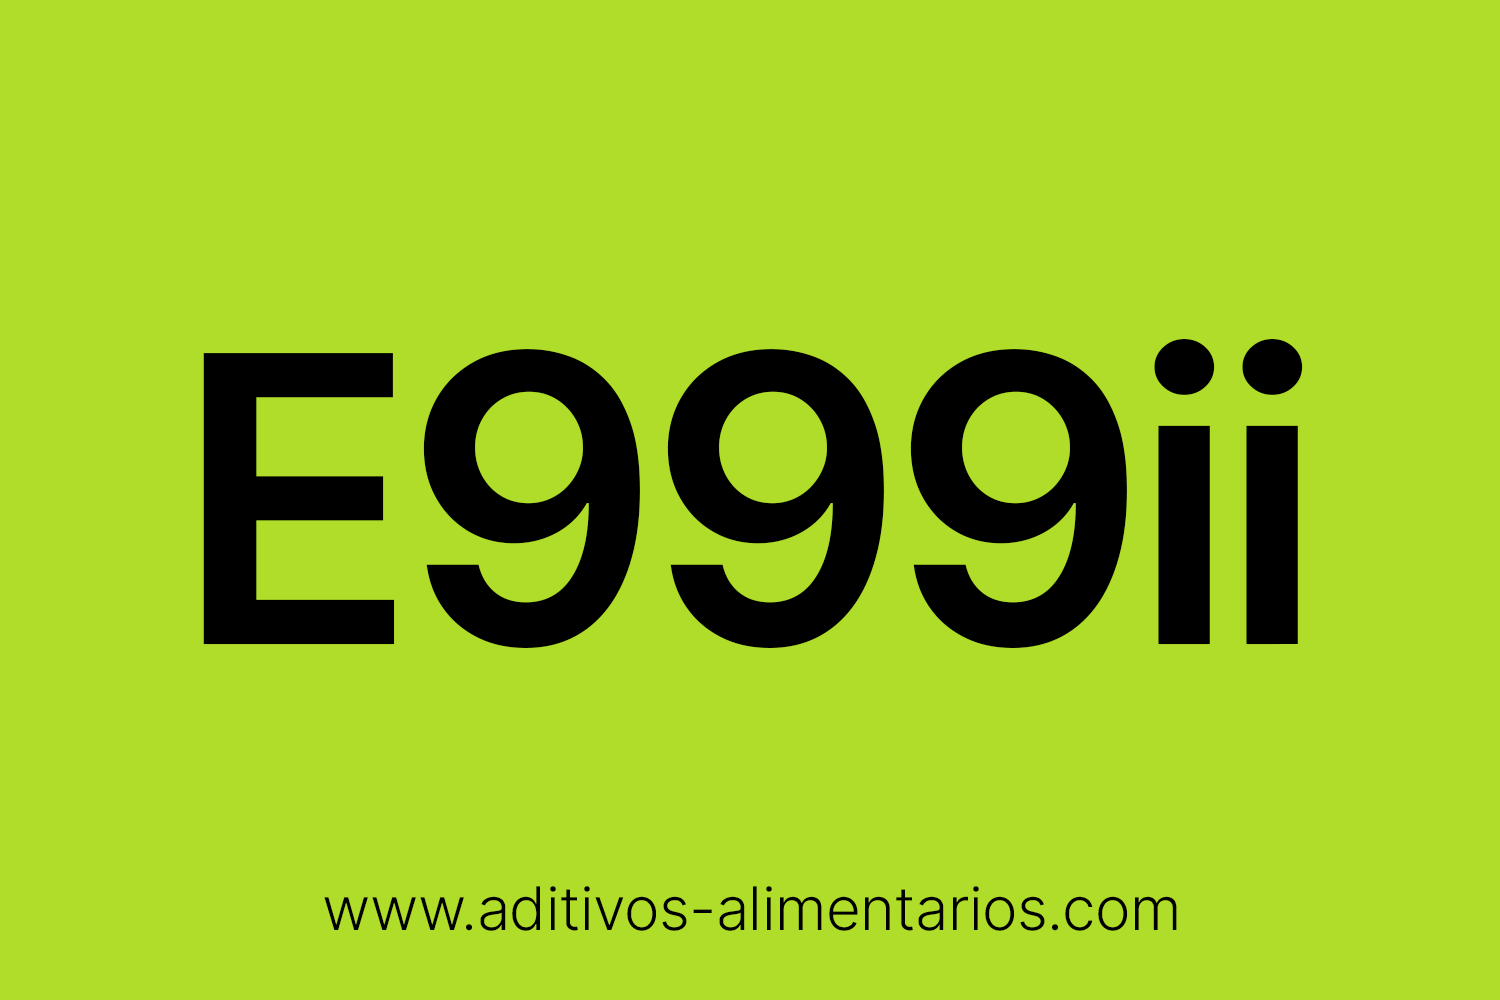 Aditivo Alimentario - E999ii - Extracto de Quilaya (Clase 2)